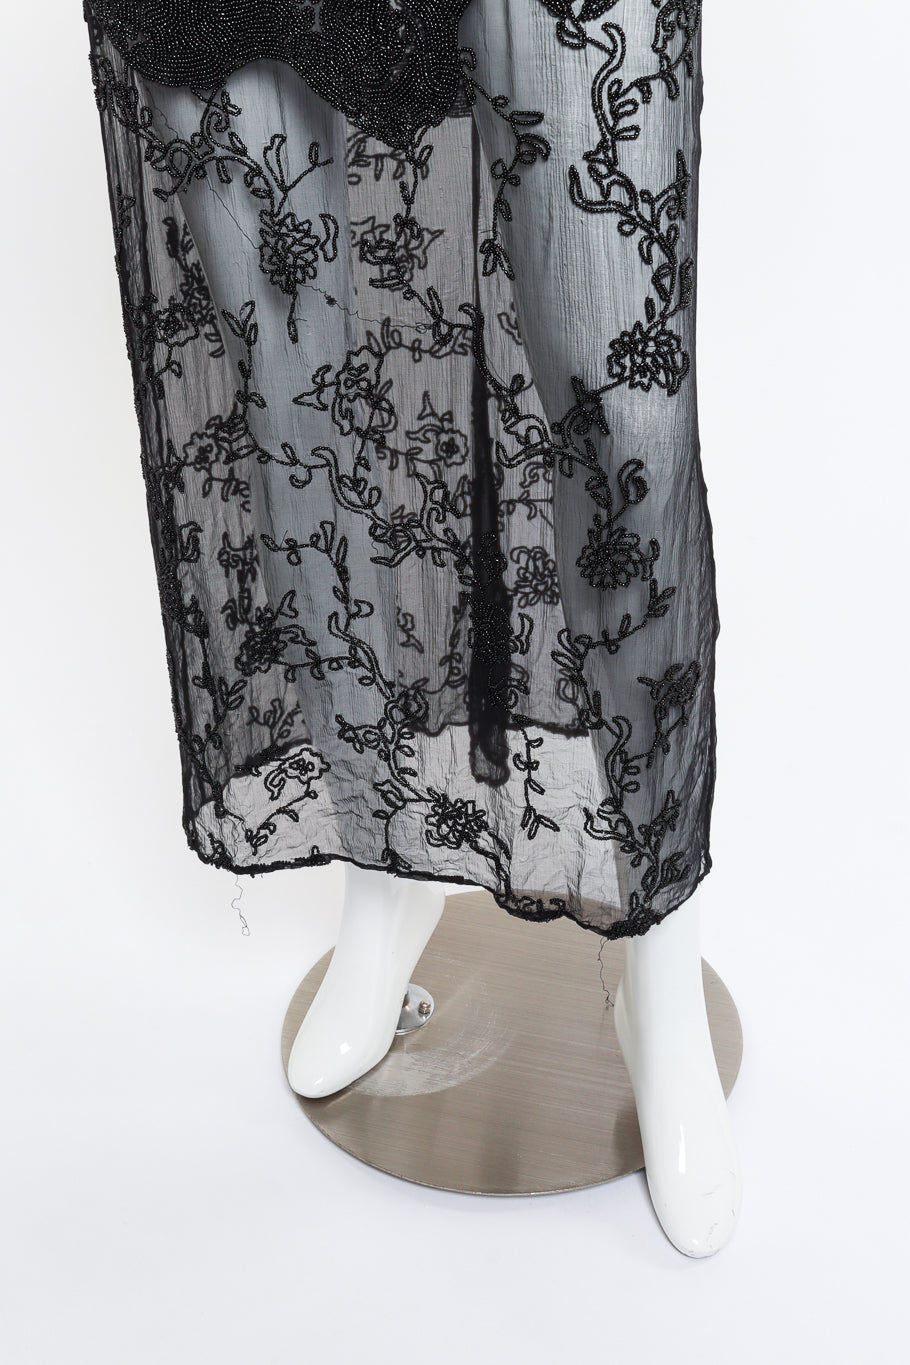 Alberta Ferretti Beaded Maxi Dress skirt mannequin @RECESS LA